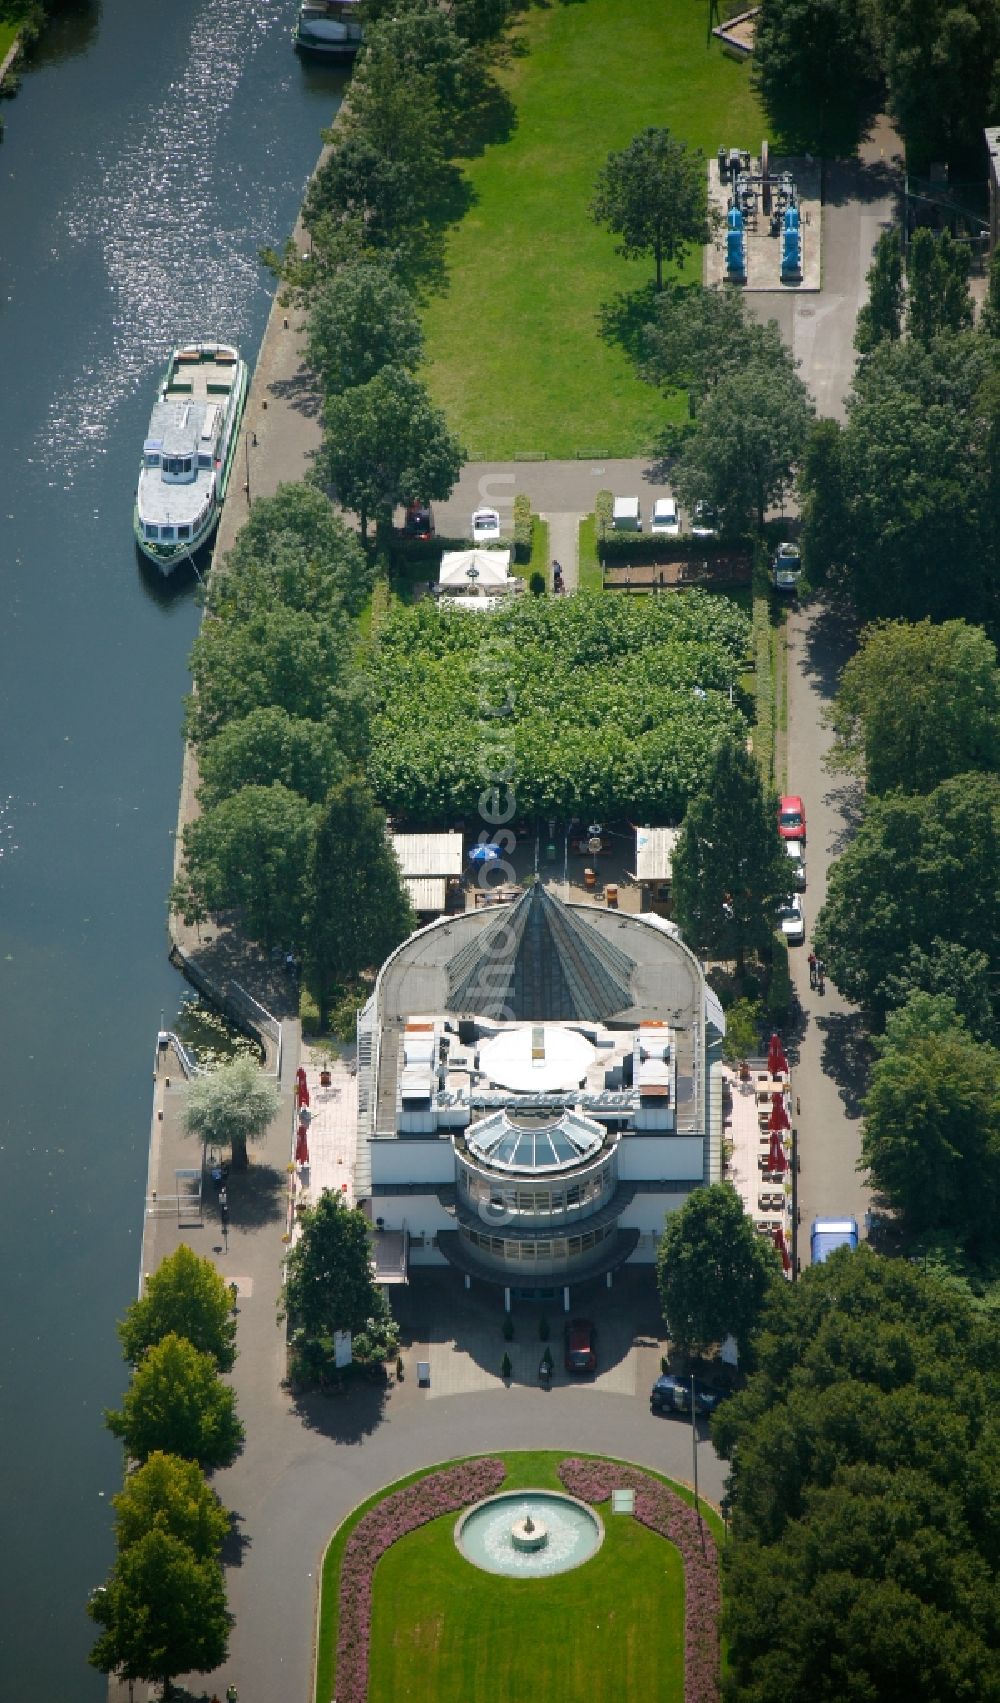 Aerial photograph Mülheim an der Ruhr - Water station - pier of the White Fleet - on the lock island in the Ruhr lock Muelheim an der Ruhr in North Rhine-Westphalia